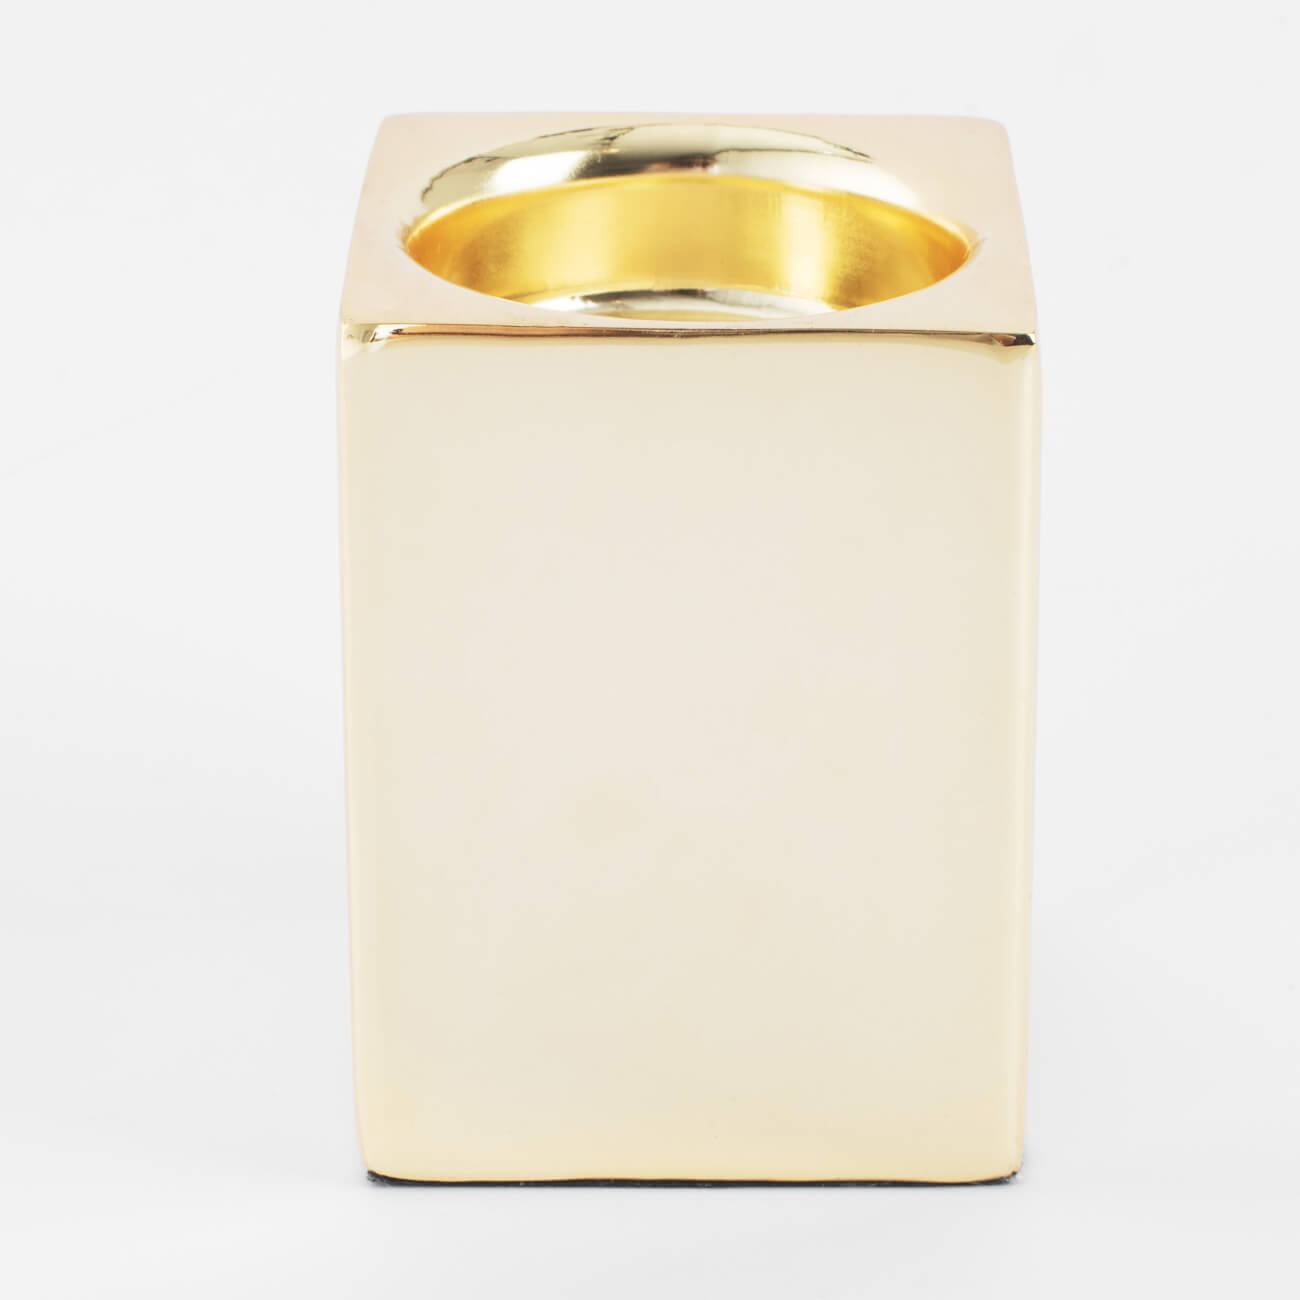 Подсвечник, 7 см, для чайной свечи, металл, золотистый, Fantastic gold подсвечник stay gold